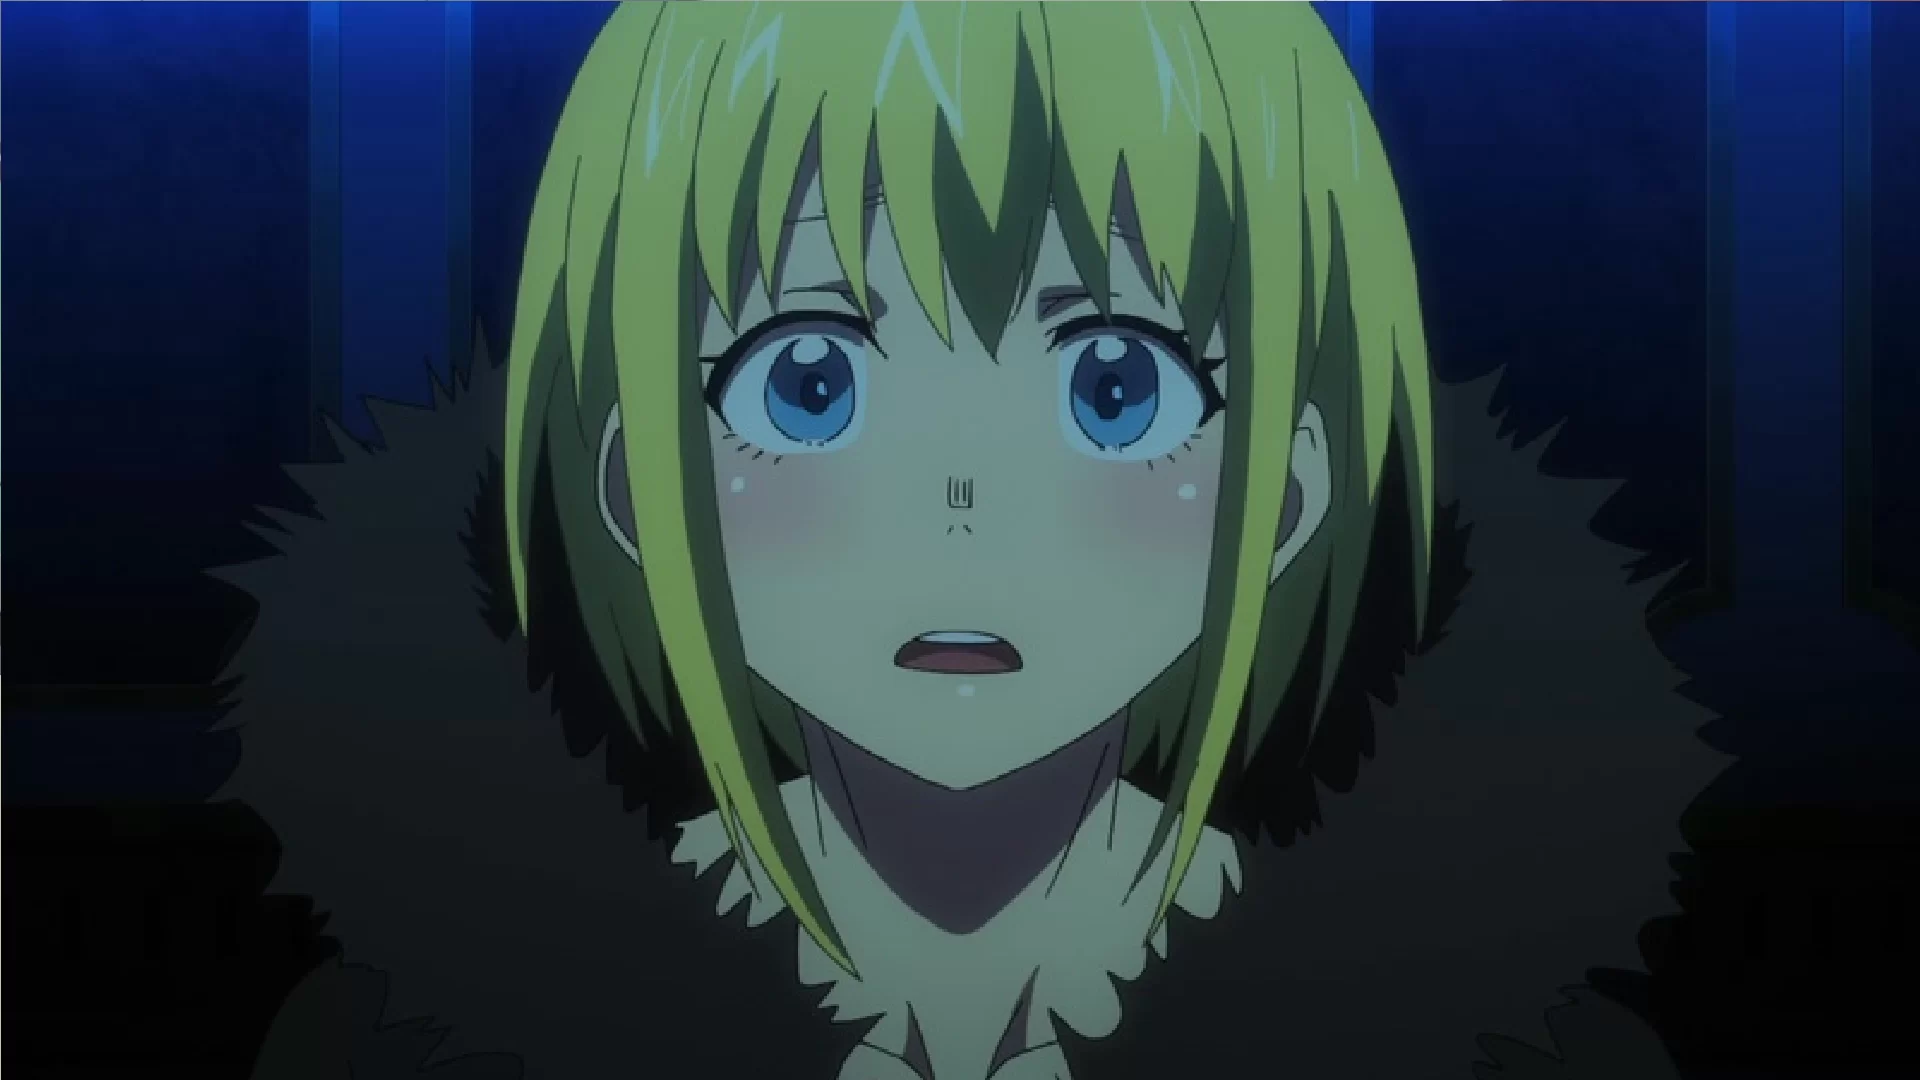 Minaturka 6 odcinka anime Enen no Shouboutai